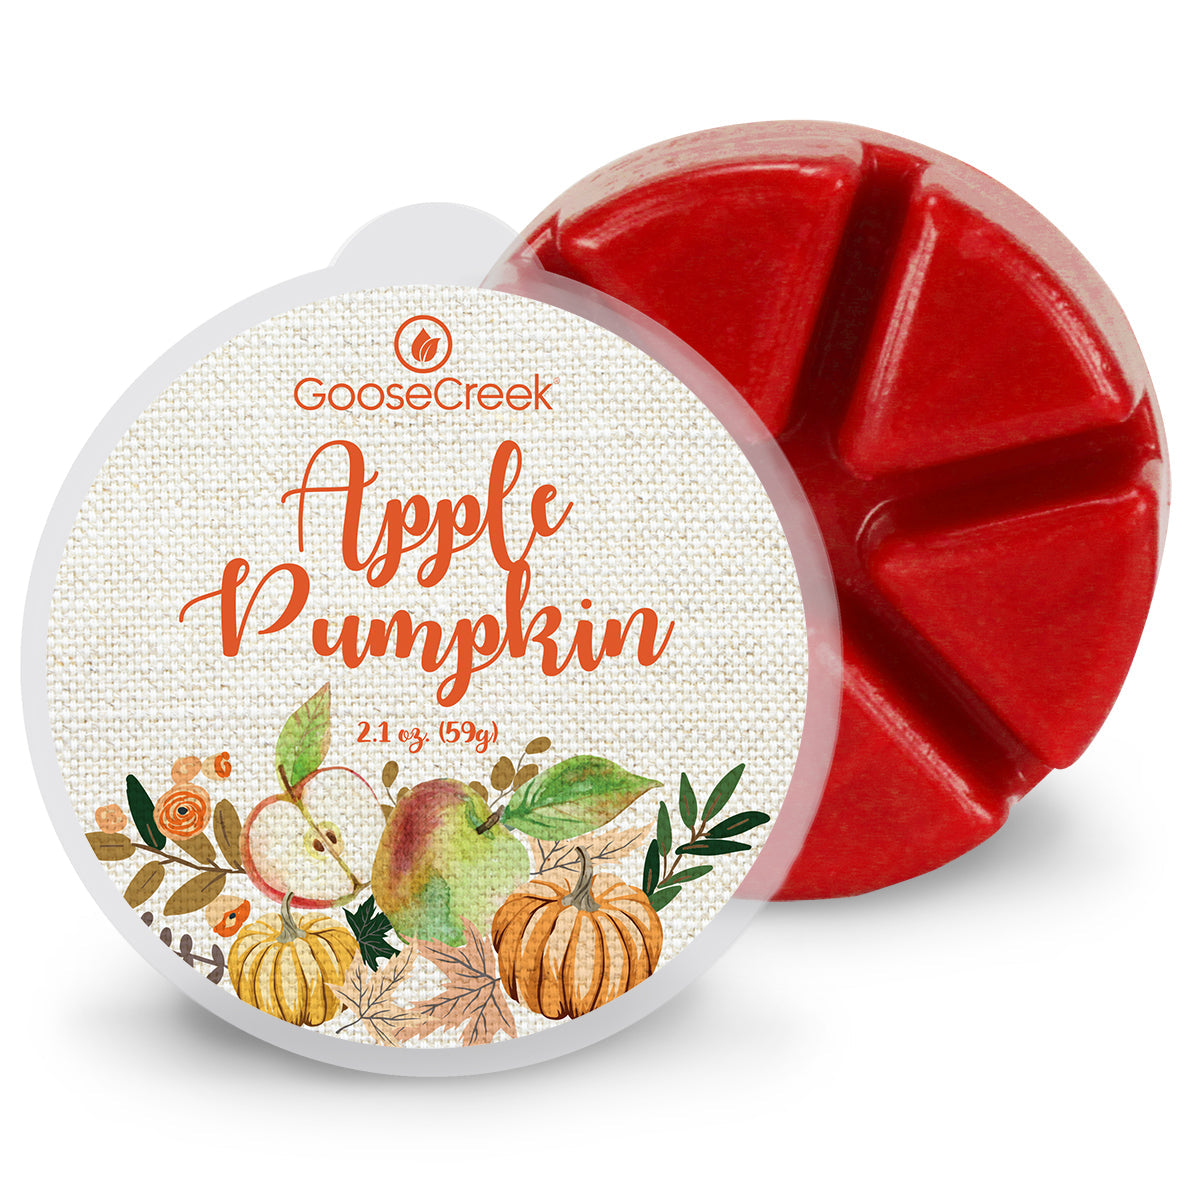 Apple Pumpkin Wax Melt